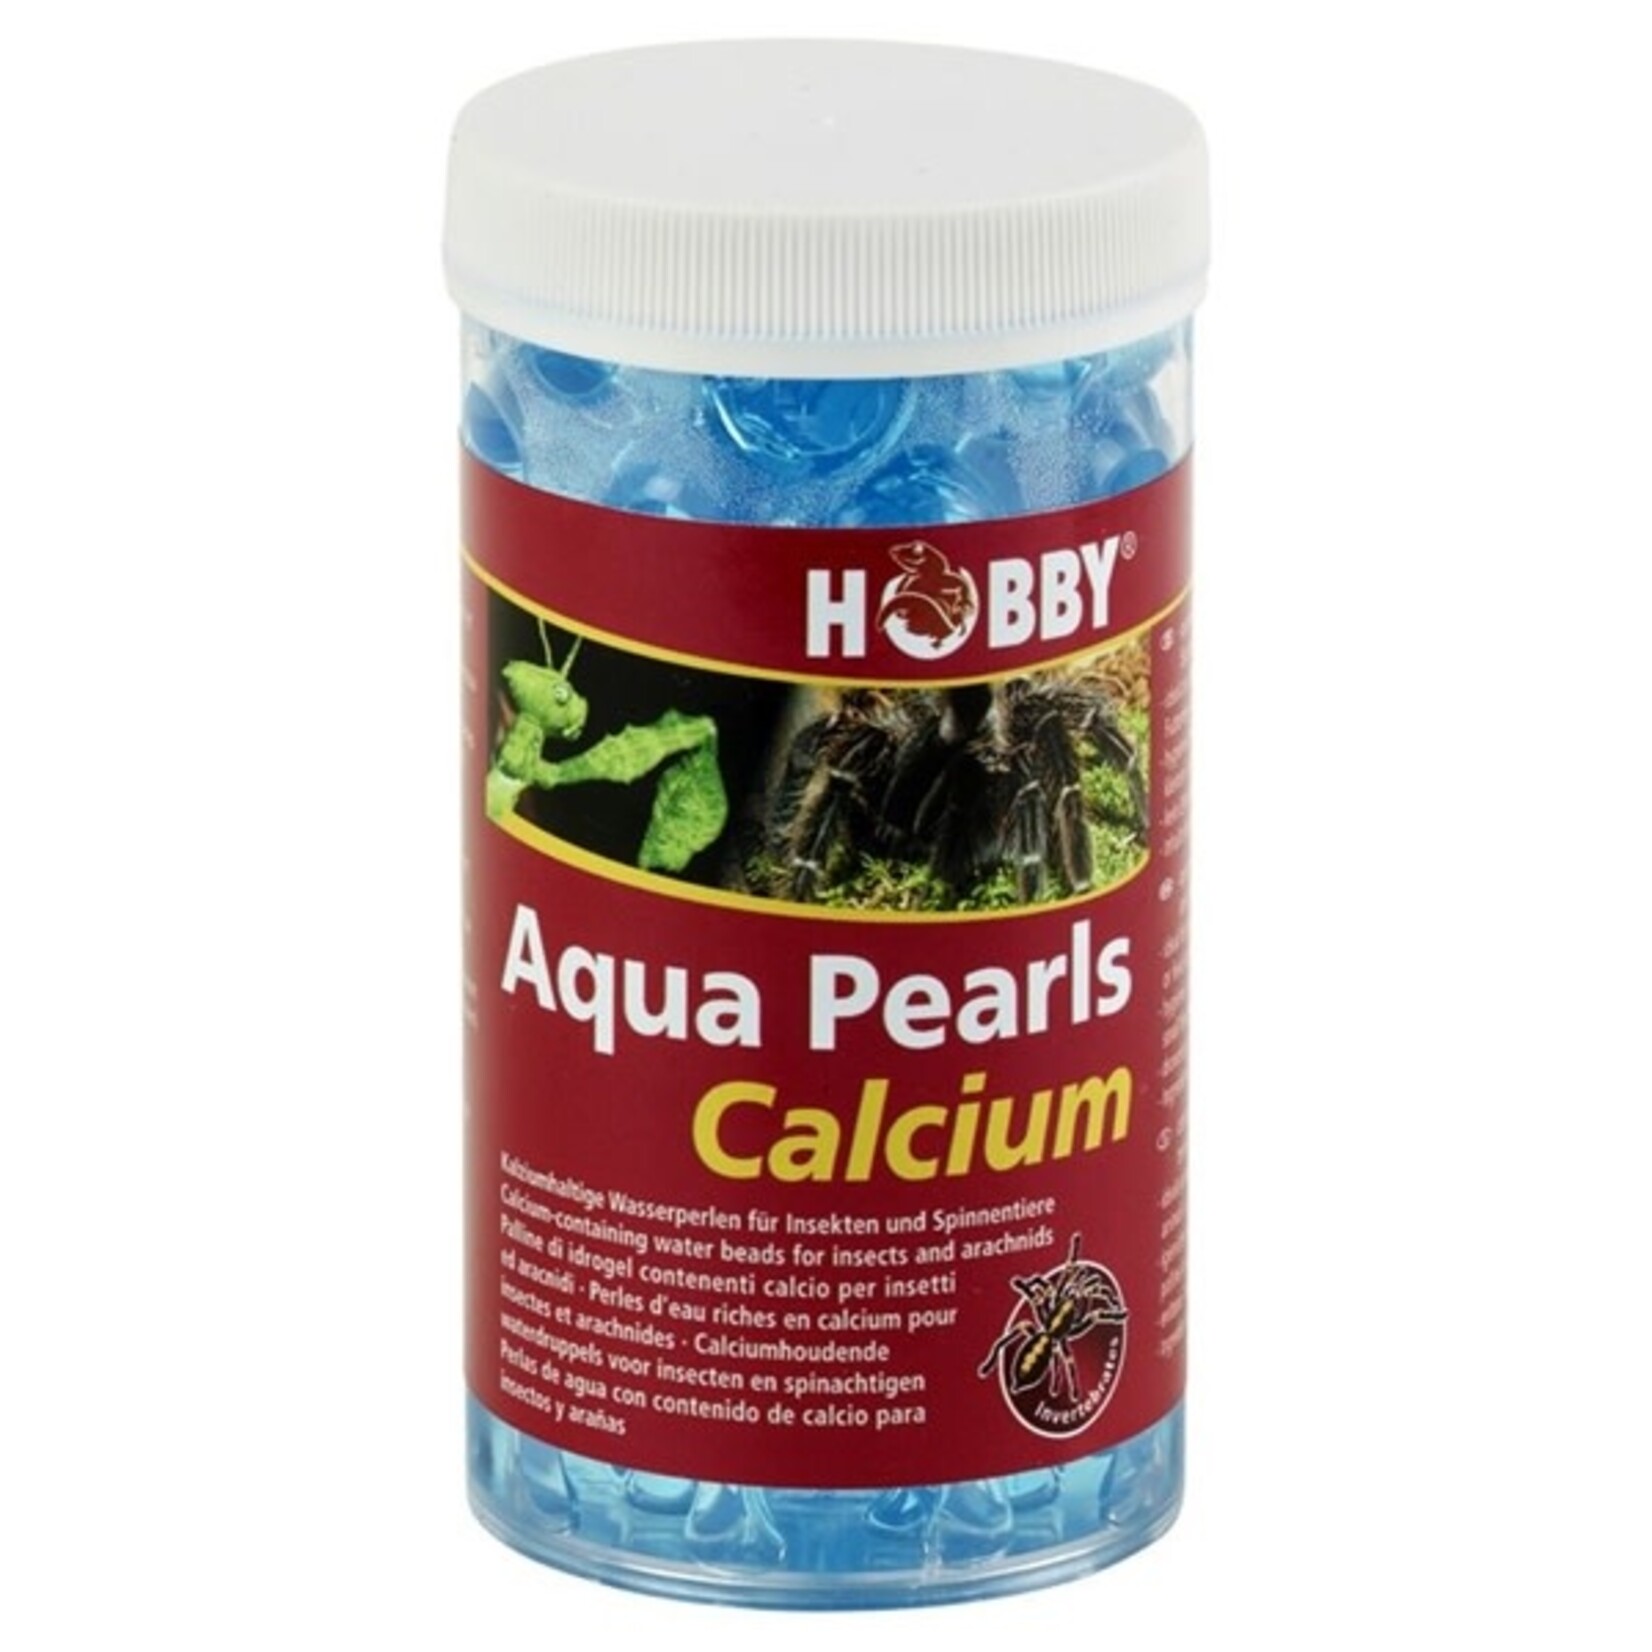 Hobby Aqua pearls calcium 250 ml